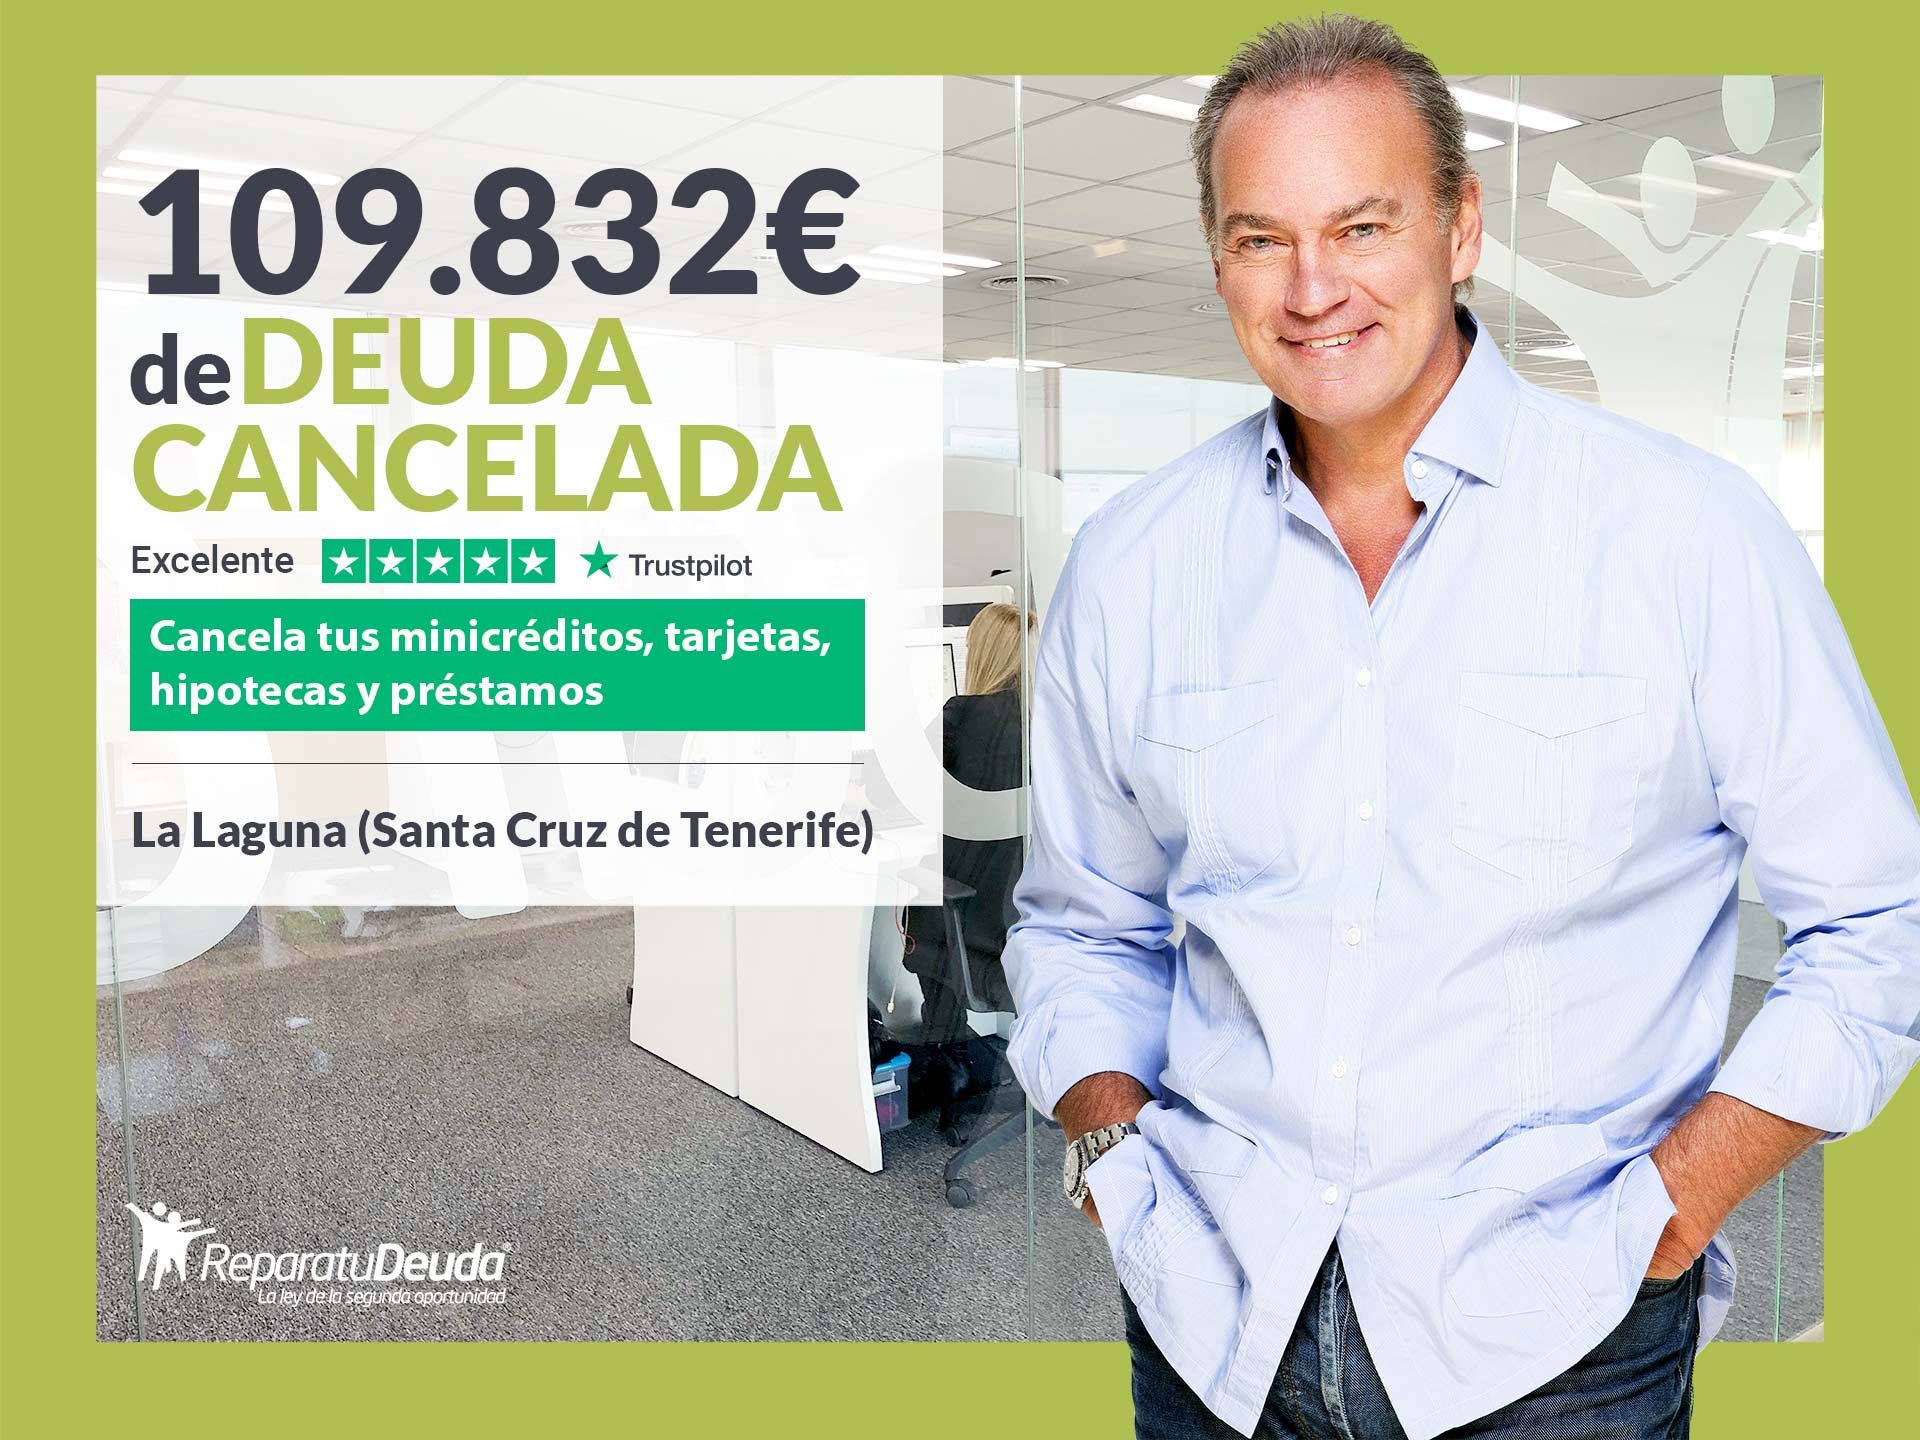 Repara tu Deuda Abogados cancela 109.832? en La Laguna (Tenerife) con la Ley de Segunda Oportunidad